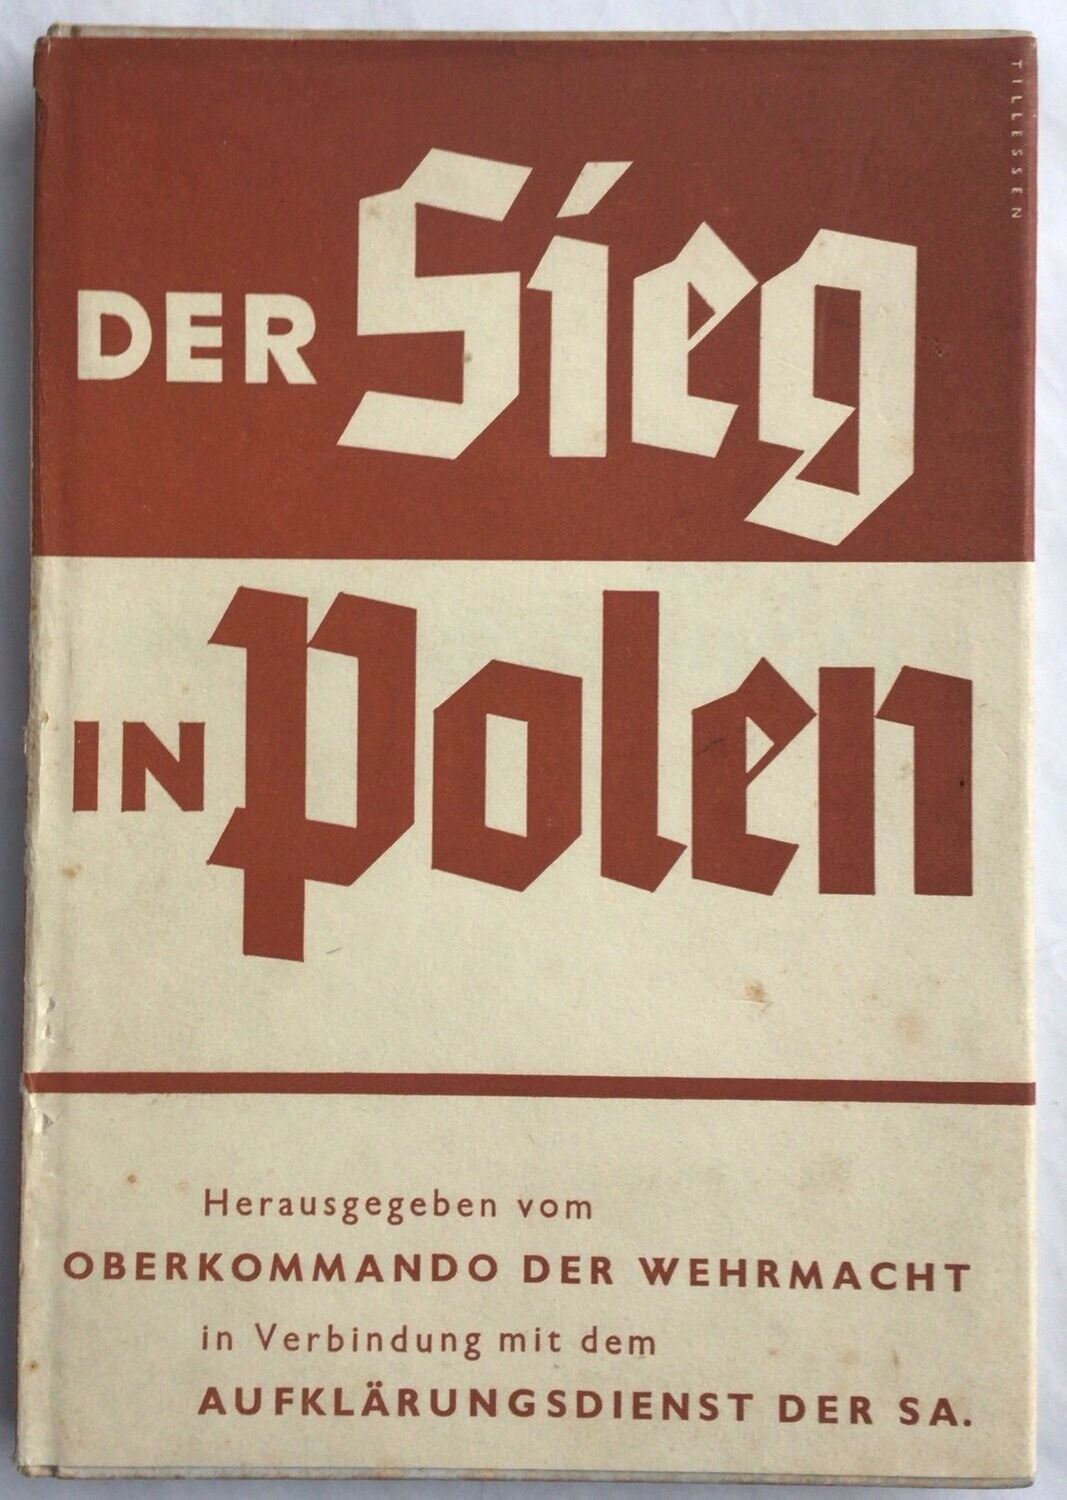 Oberkommando der Wehrmacht: Der Sieg in Polen - Kartonierte Ausgabe aus dem Jahr 1940 mit Original-Schutzumschlag